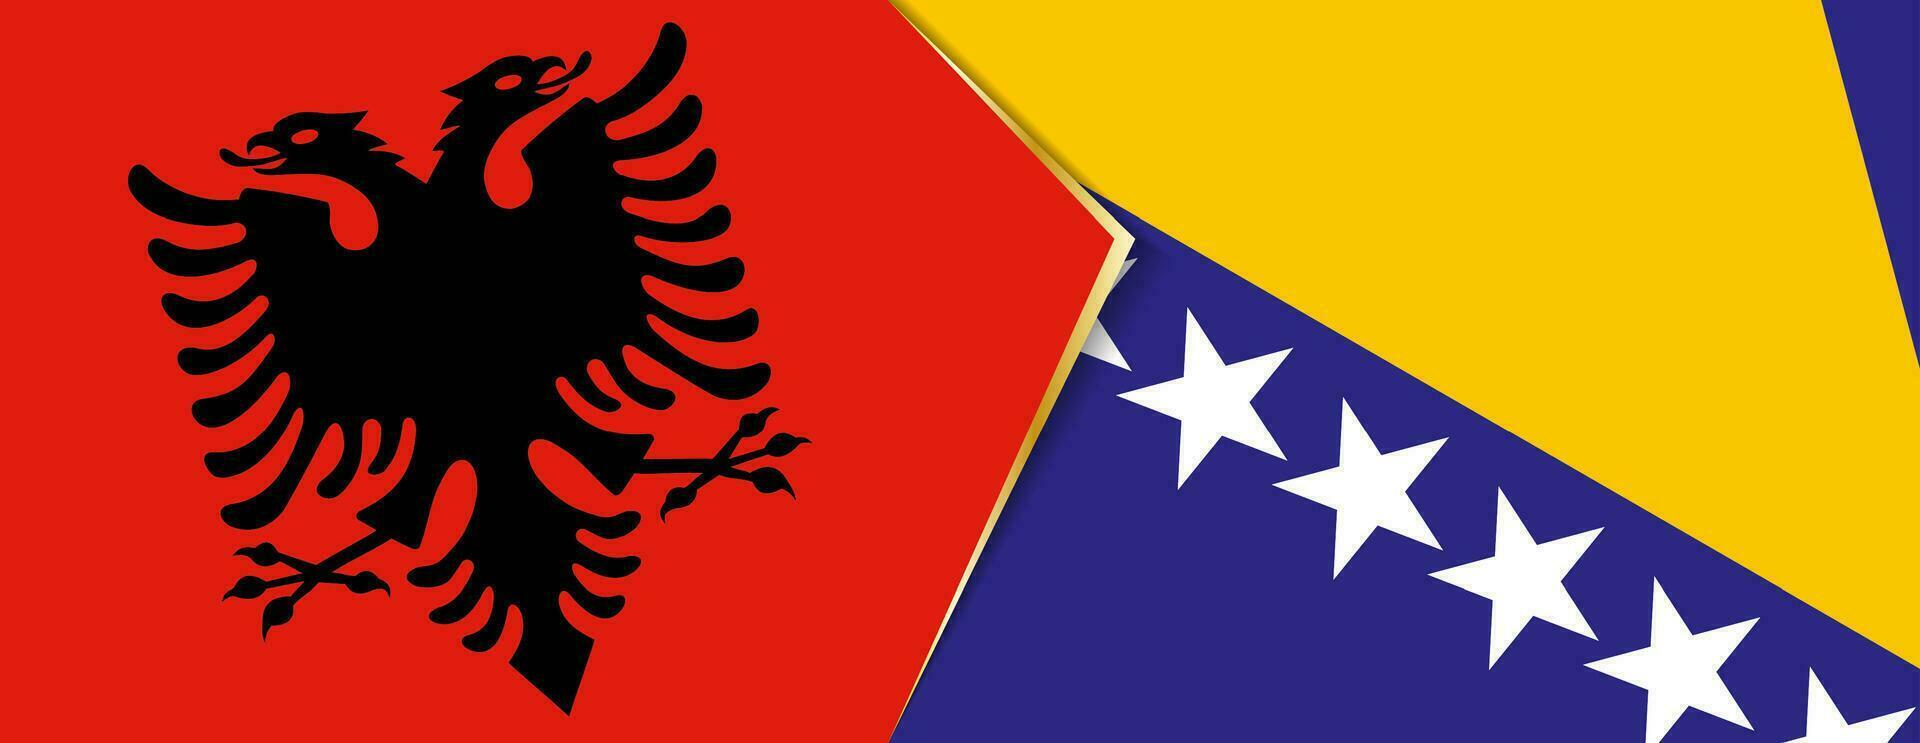 Albanie et Bosnie et herzégovine drapeaux, deux vecteur drapeaux.